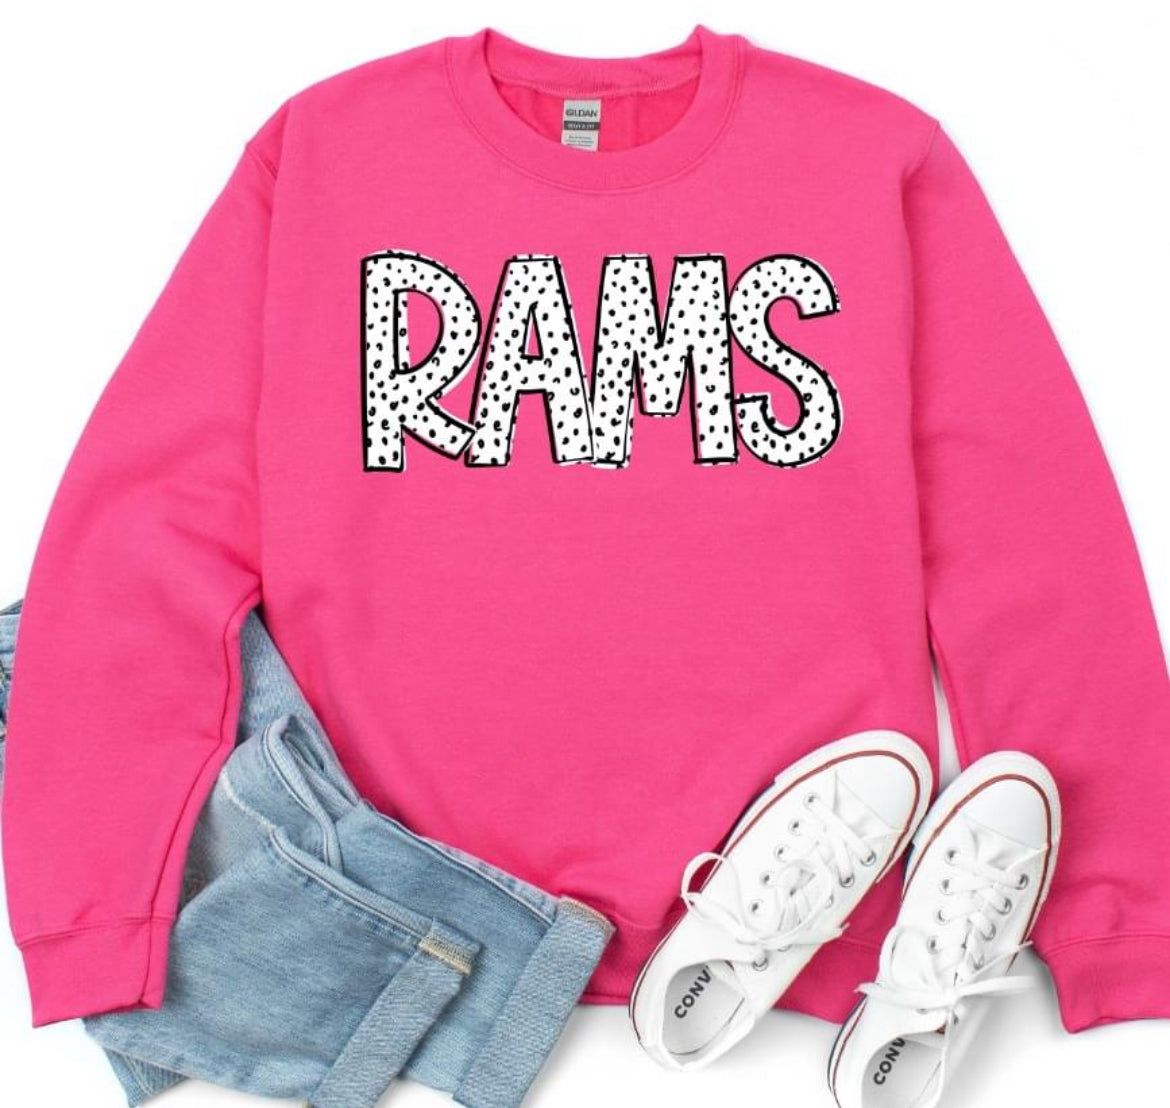 Rams (Dottie Mascot) - DTF